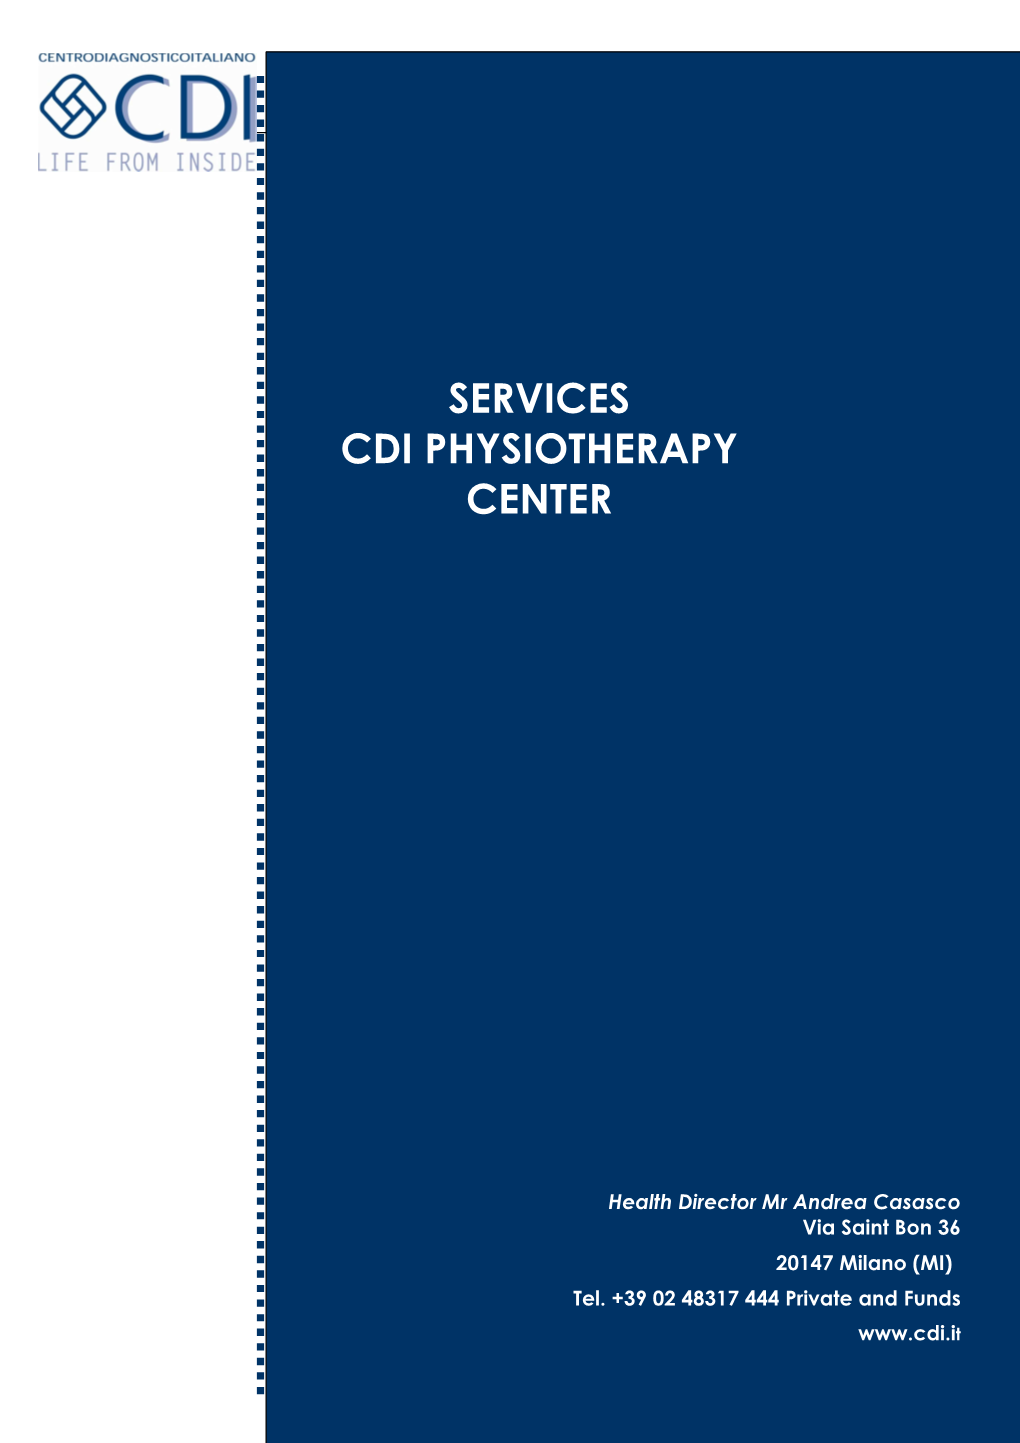 Carta Dei Servizi CDI Fisioetrapia E Riabilitazione